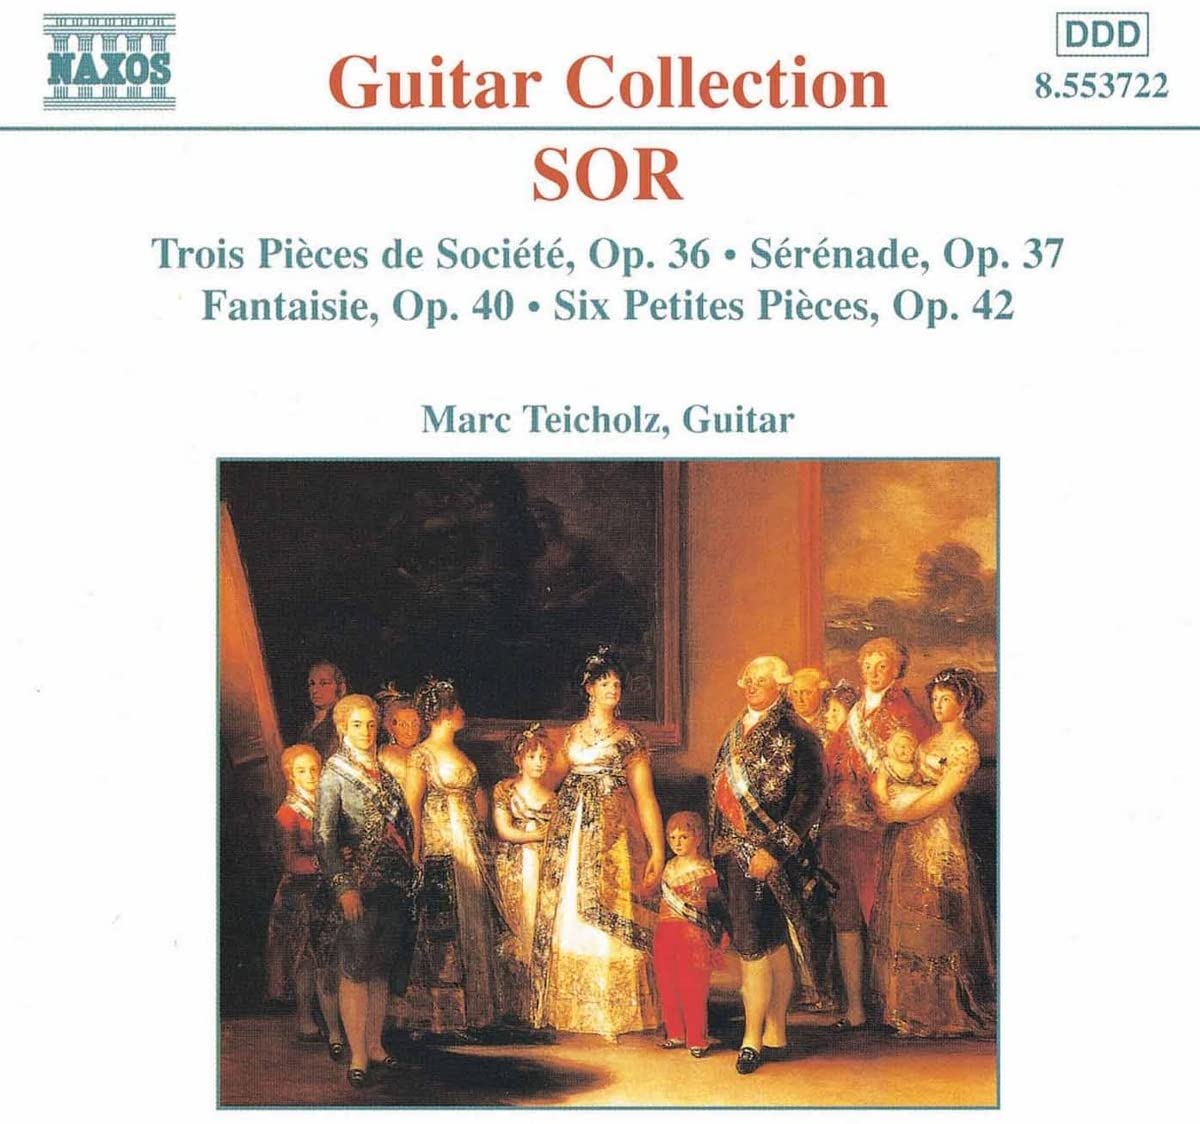 SOR: 3 Pieces de Societe, Op. 36, 6 Petites Pieces, Op. 42